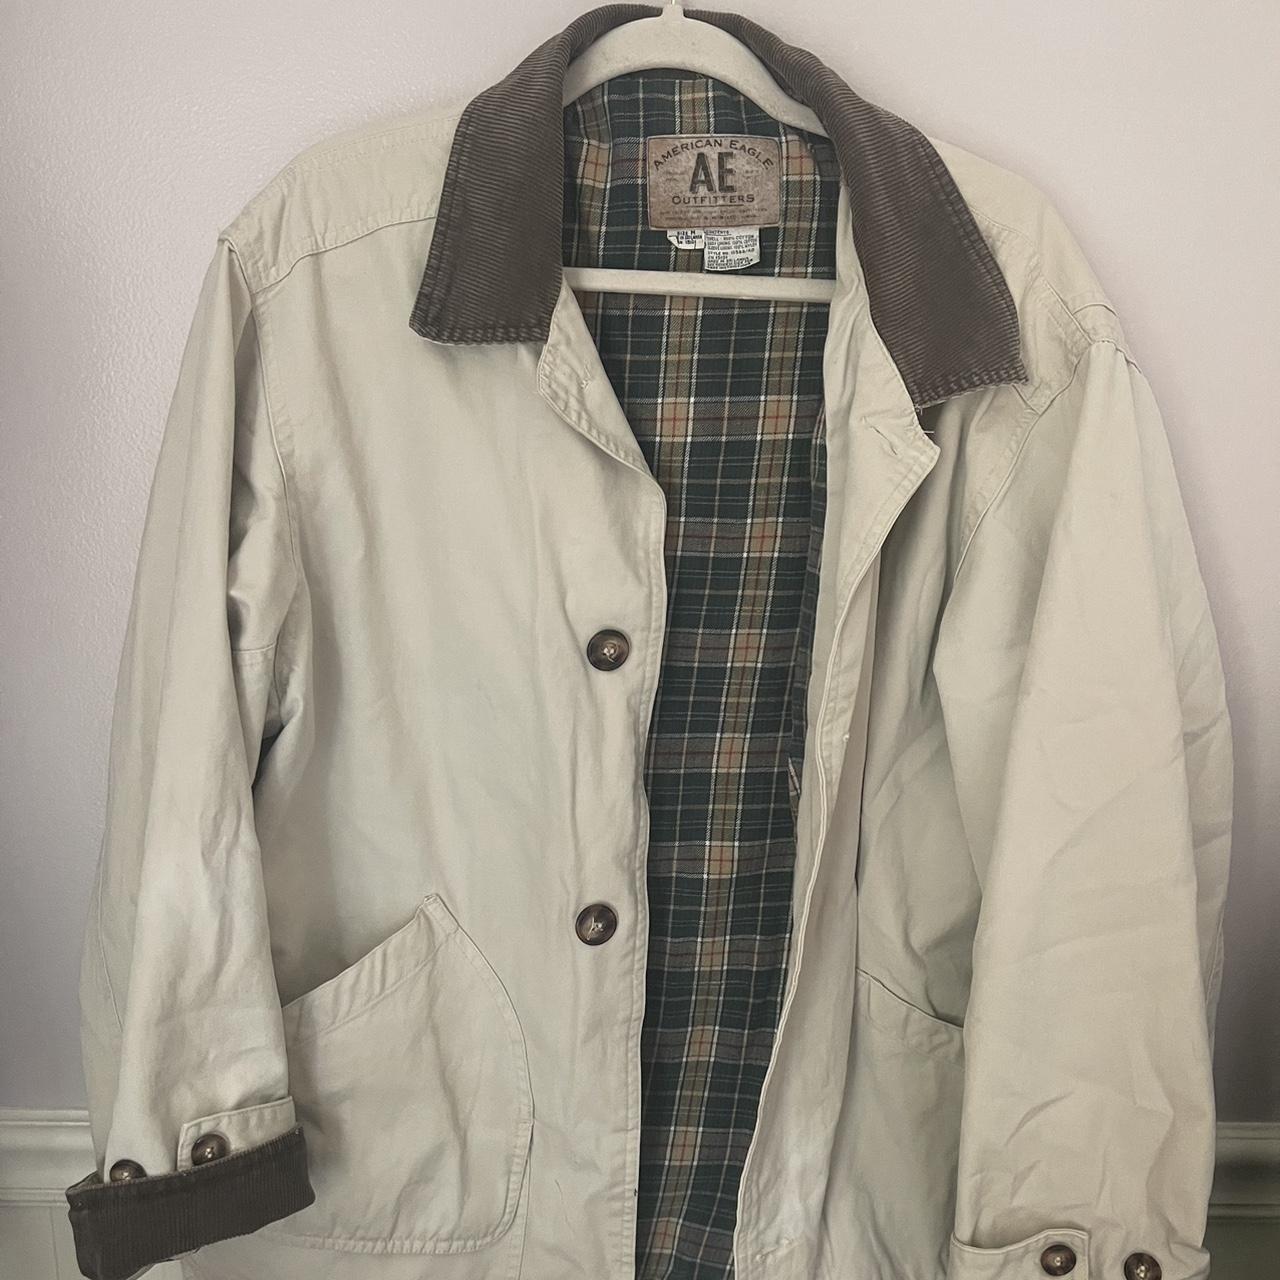 Vintage American Eagle jacket perfect for spring... - Depop